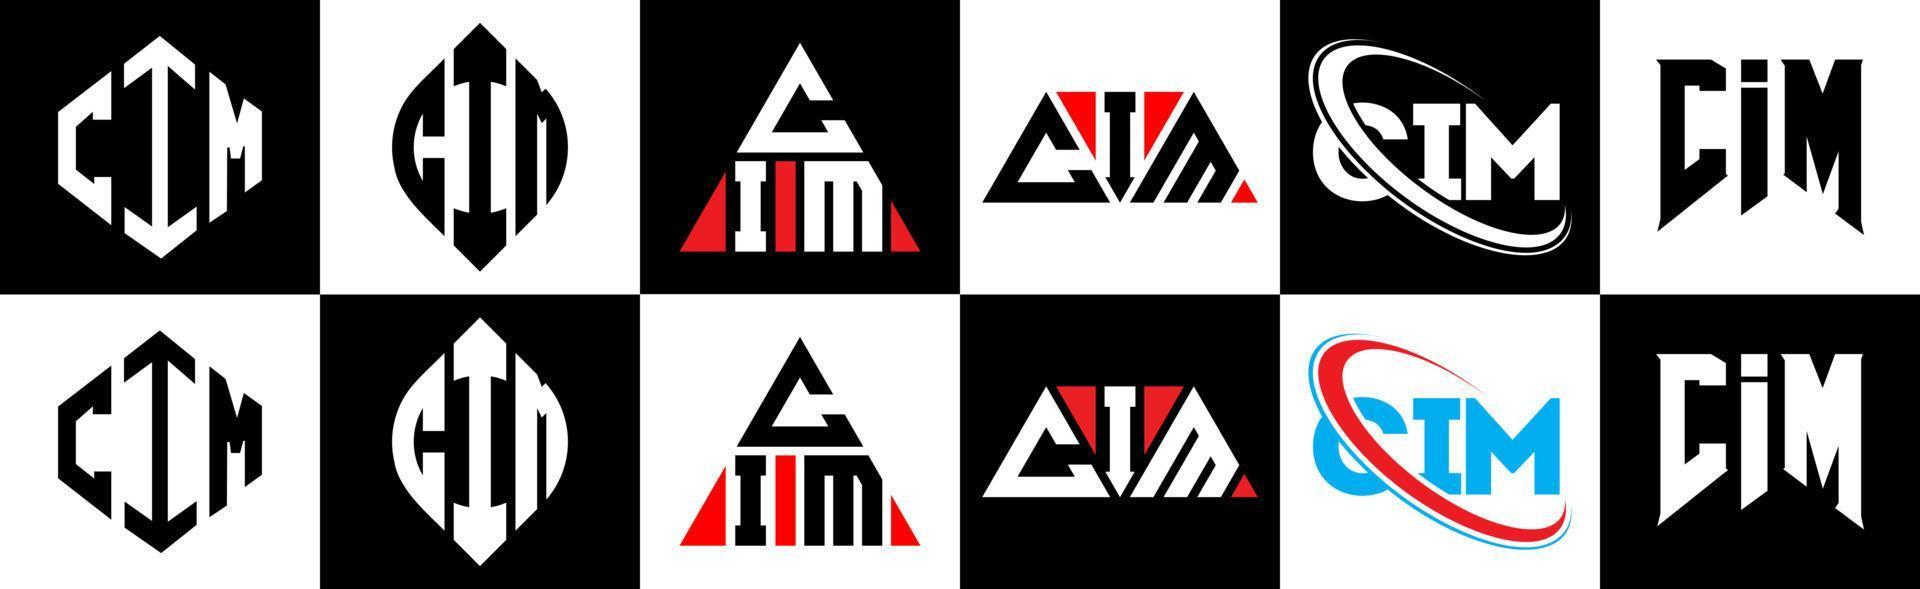 création de logo de lettre cim en six styles. cim polygone, cercle, triangle, hexagone, style plat et simple avec logo de lettre de variation de couleur noir et blanc dans un plan de travail. cim logo minimaliste et classique vecteur